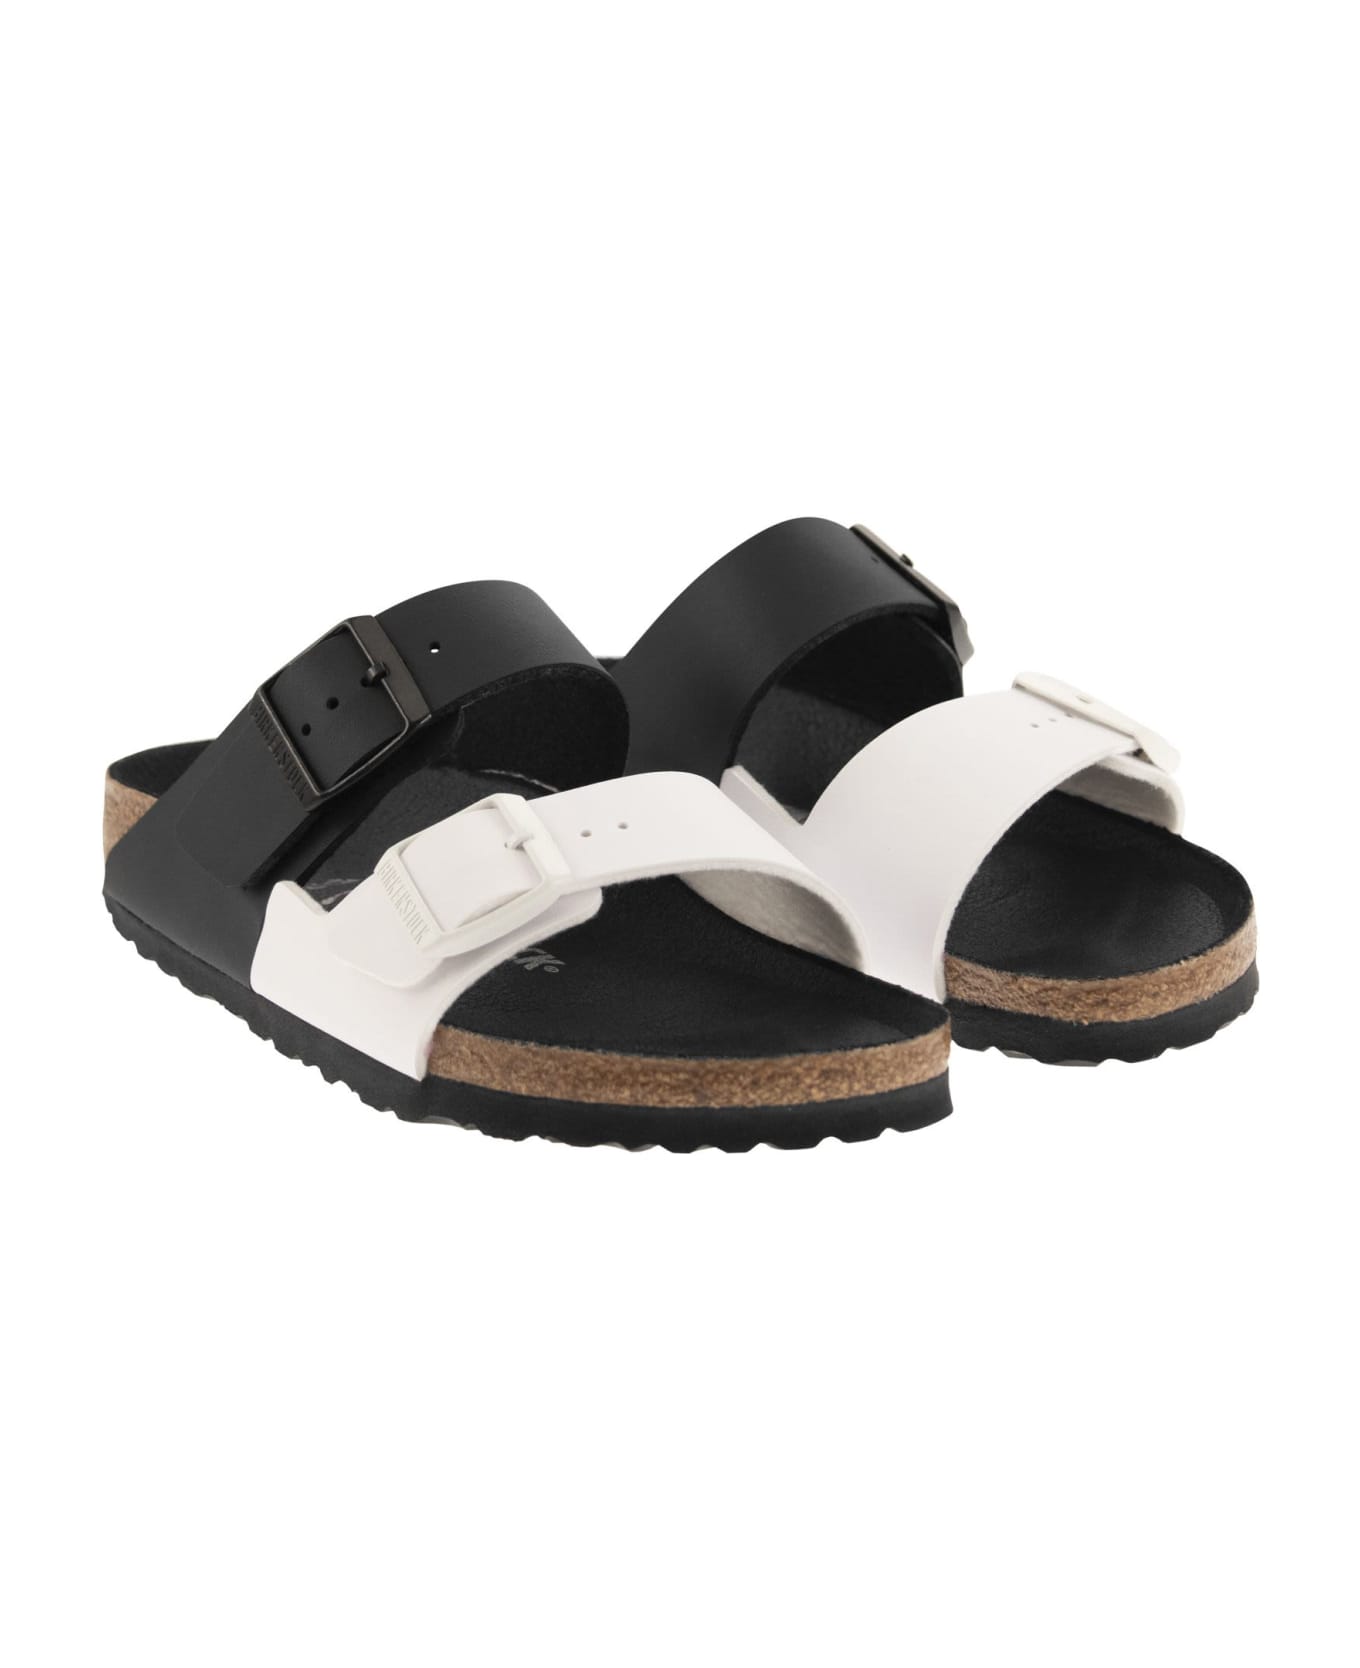 Birkenstock Arizona Split Sandal - Black/white